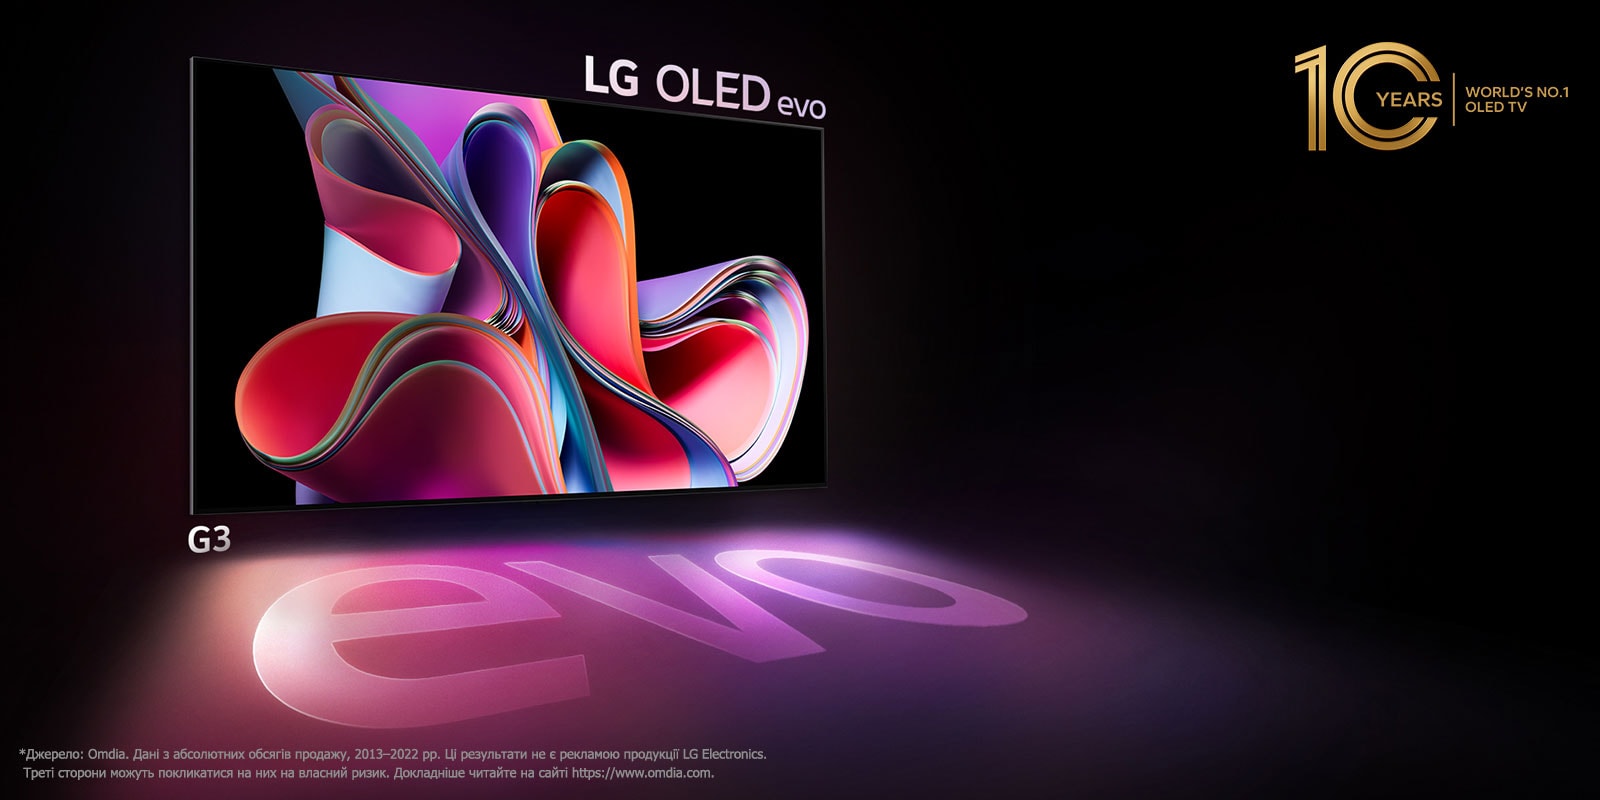 Зображення OLED-телевізора LG G3 на чорному тлі з яскраво-рожевим і фіолетовим абстрактним малюнком. Дисплей відкидає барвисту тінь зі словом evo. Емблему «Найкращий OLED-телевізор у світі протягом 10 років» розміщено у верхньому лівому куті зображення. 